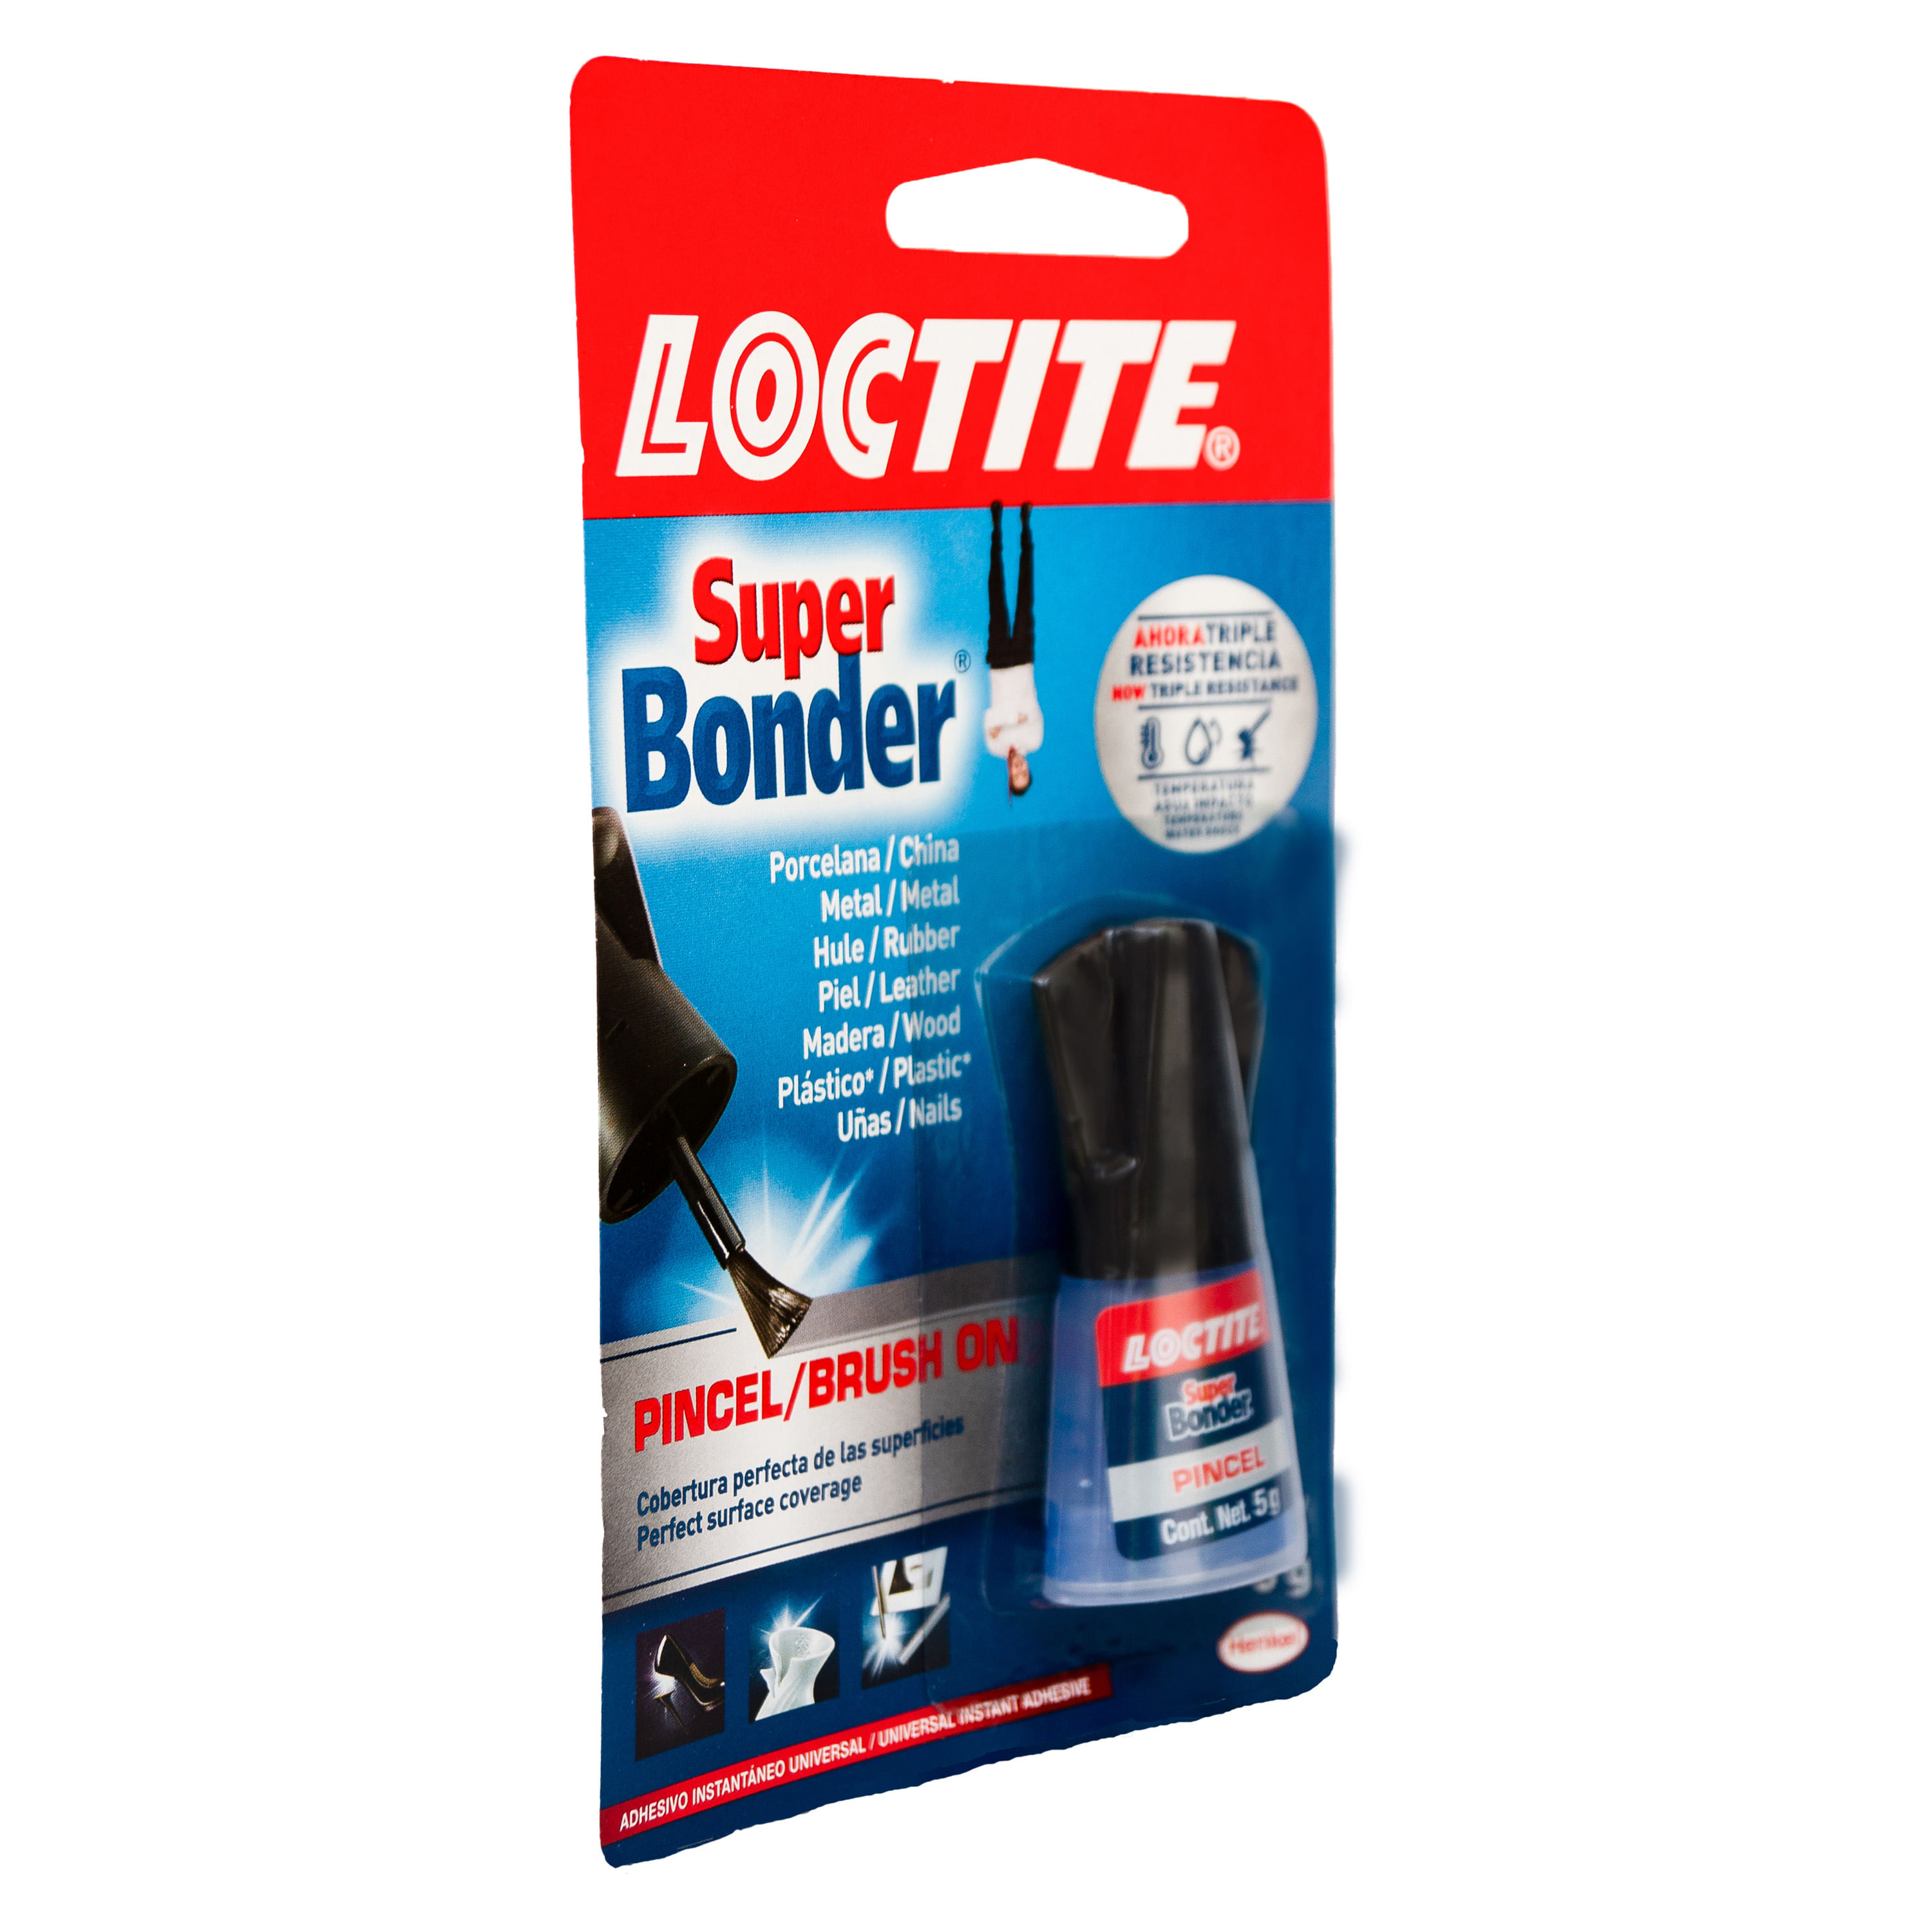 Loctite Super Glue-3 - Adhesive - 5 g